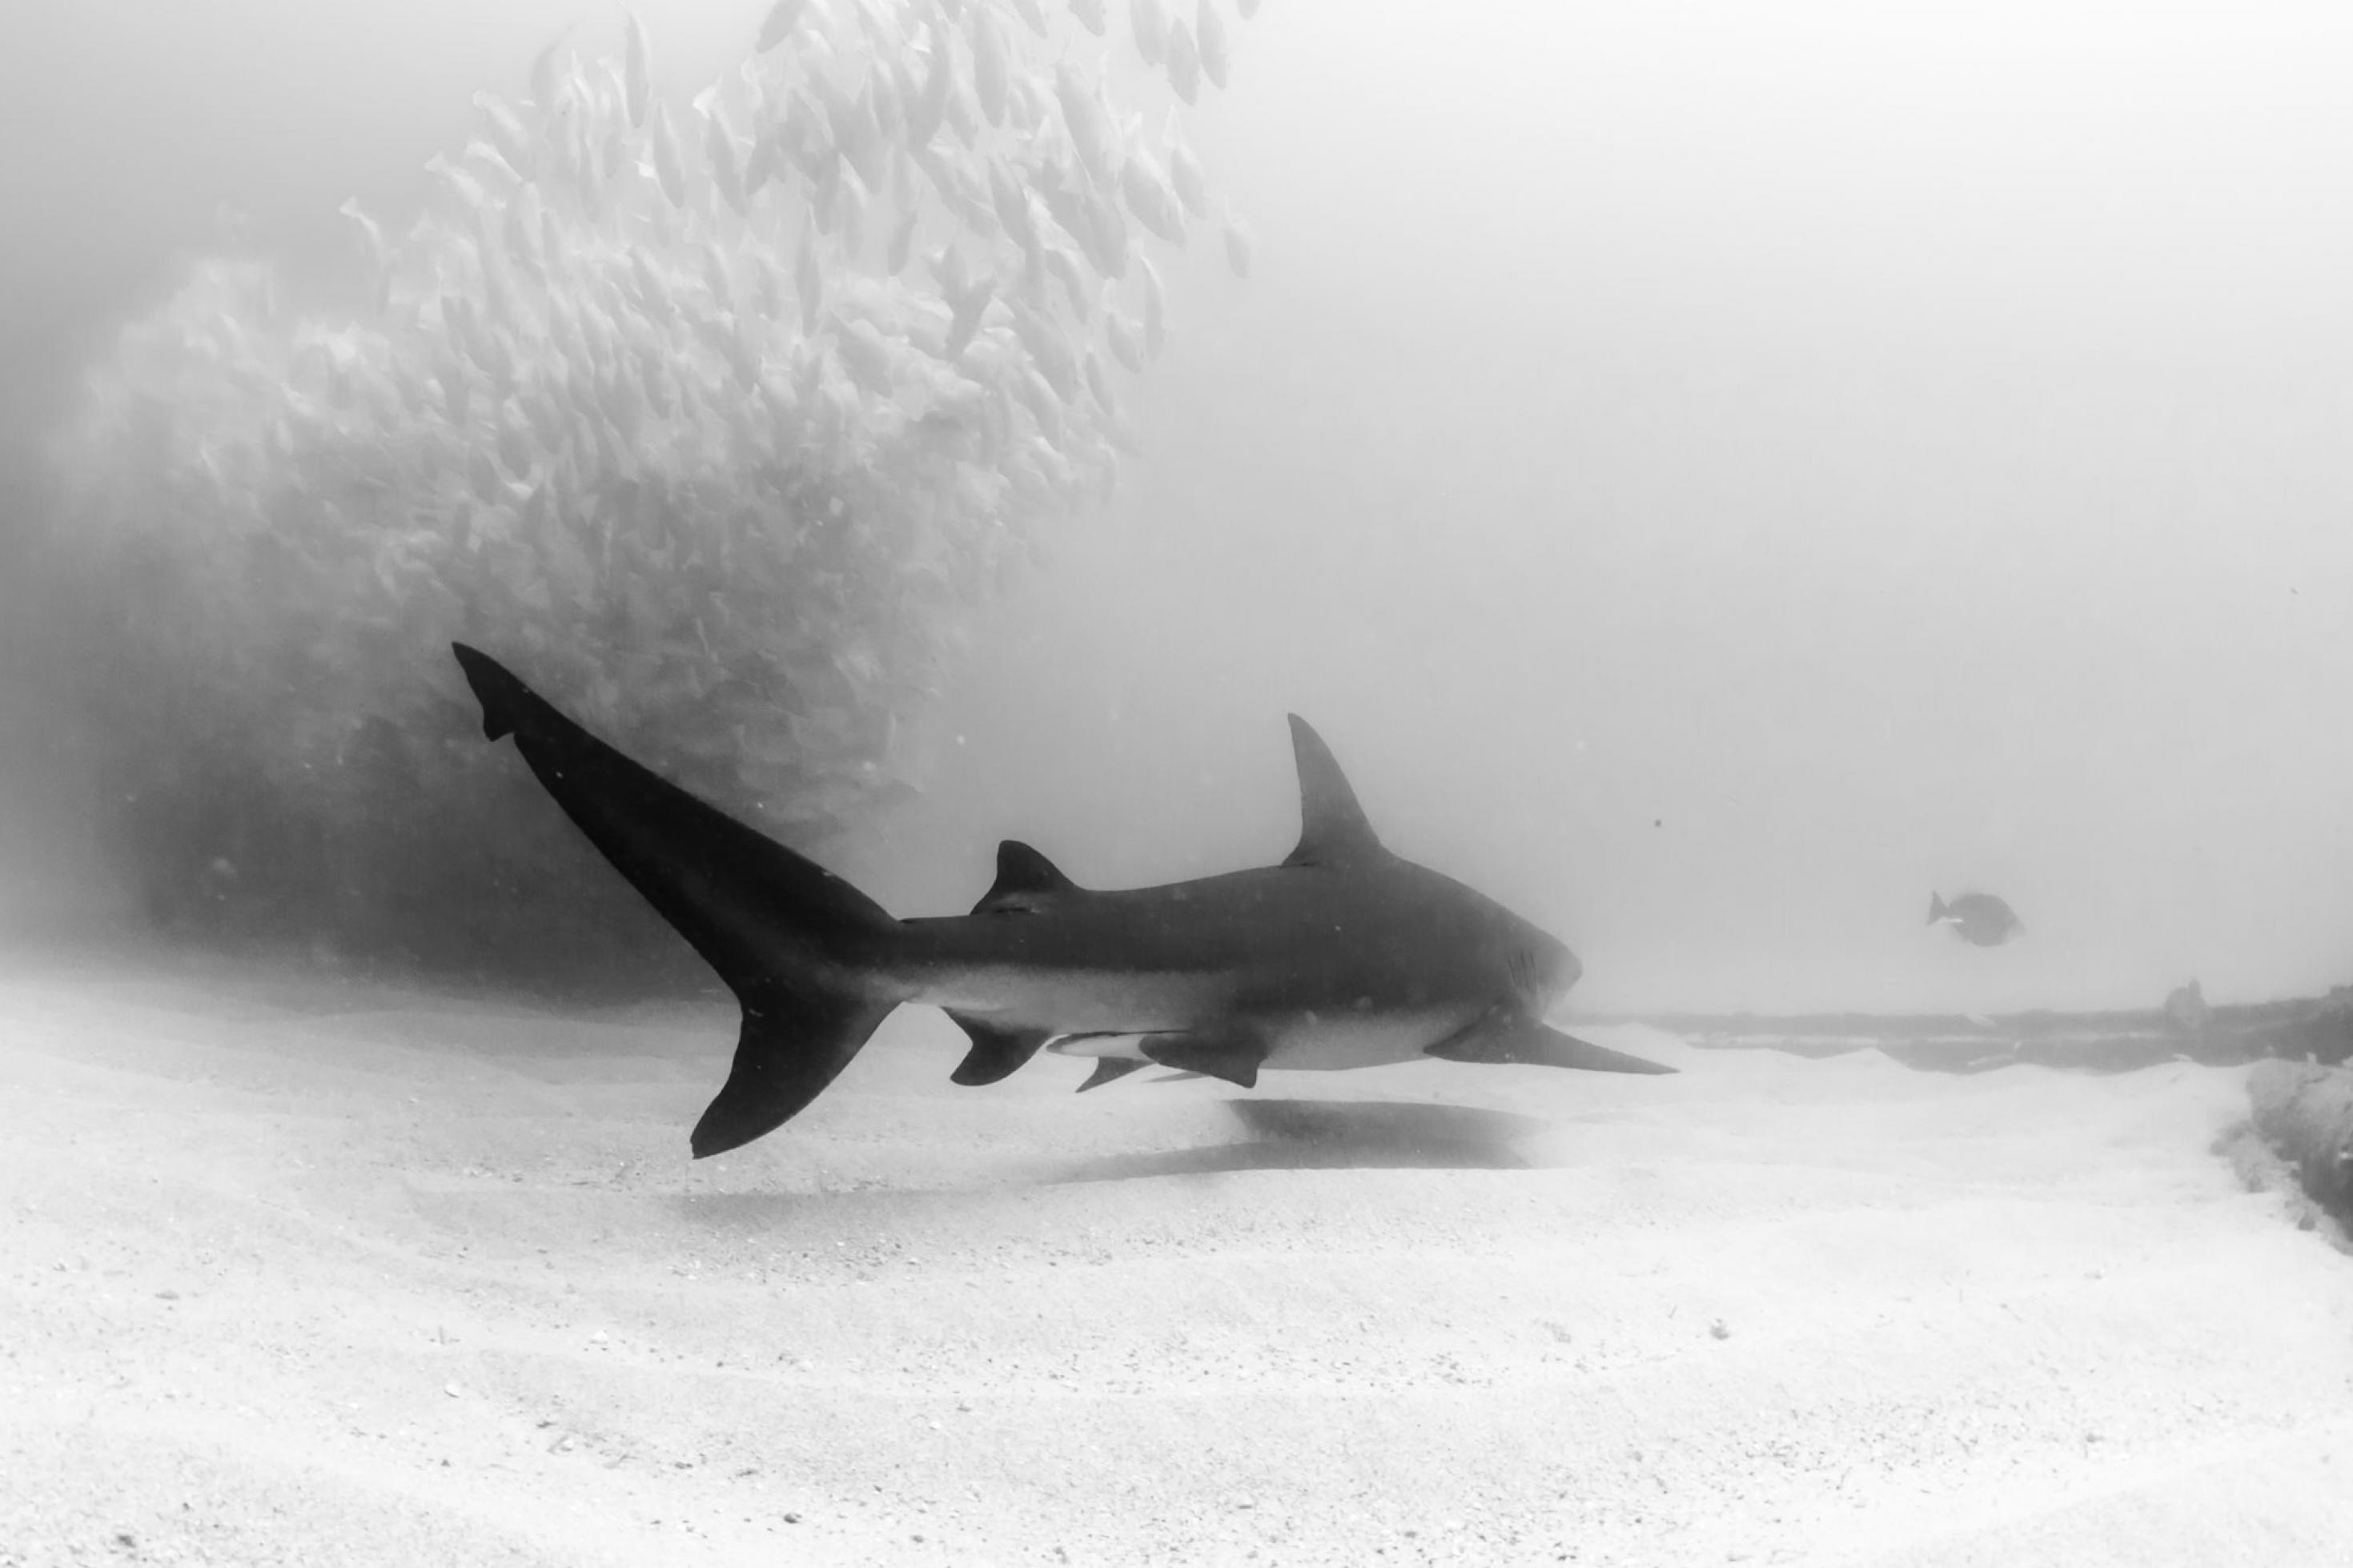 Schwarz-Weiß-Foto eines Bullenhais unter Wasser, der gerade an einem Fischschwarm vorbeischwimmt.